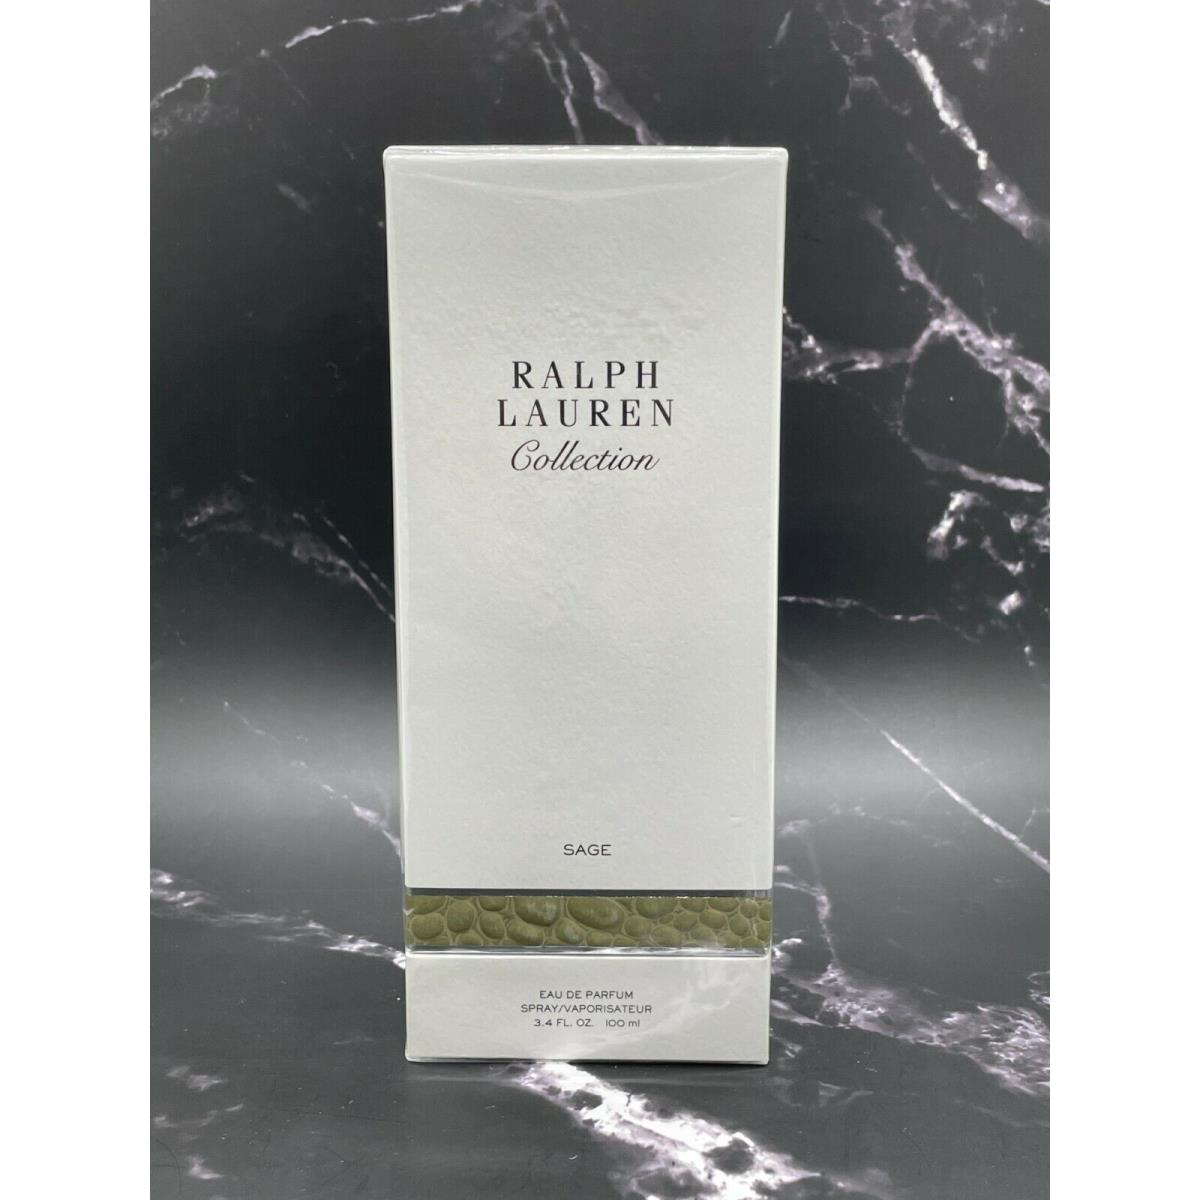 Ralph Lauren Collection Eau De Parfum Spray - Sage - 3.4 oz